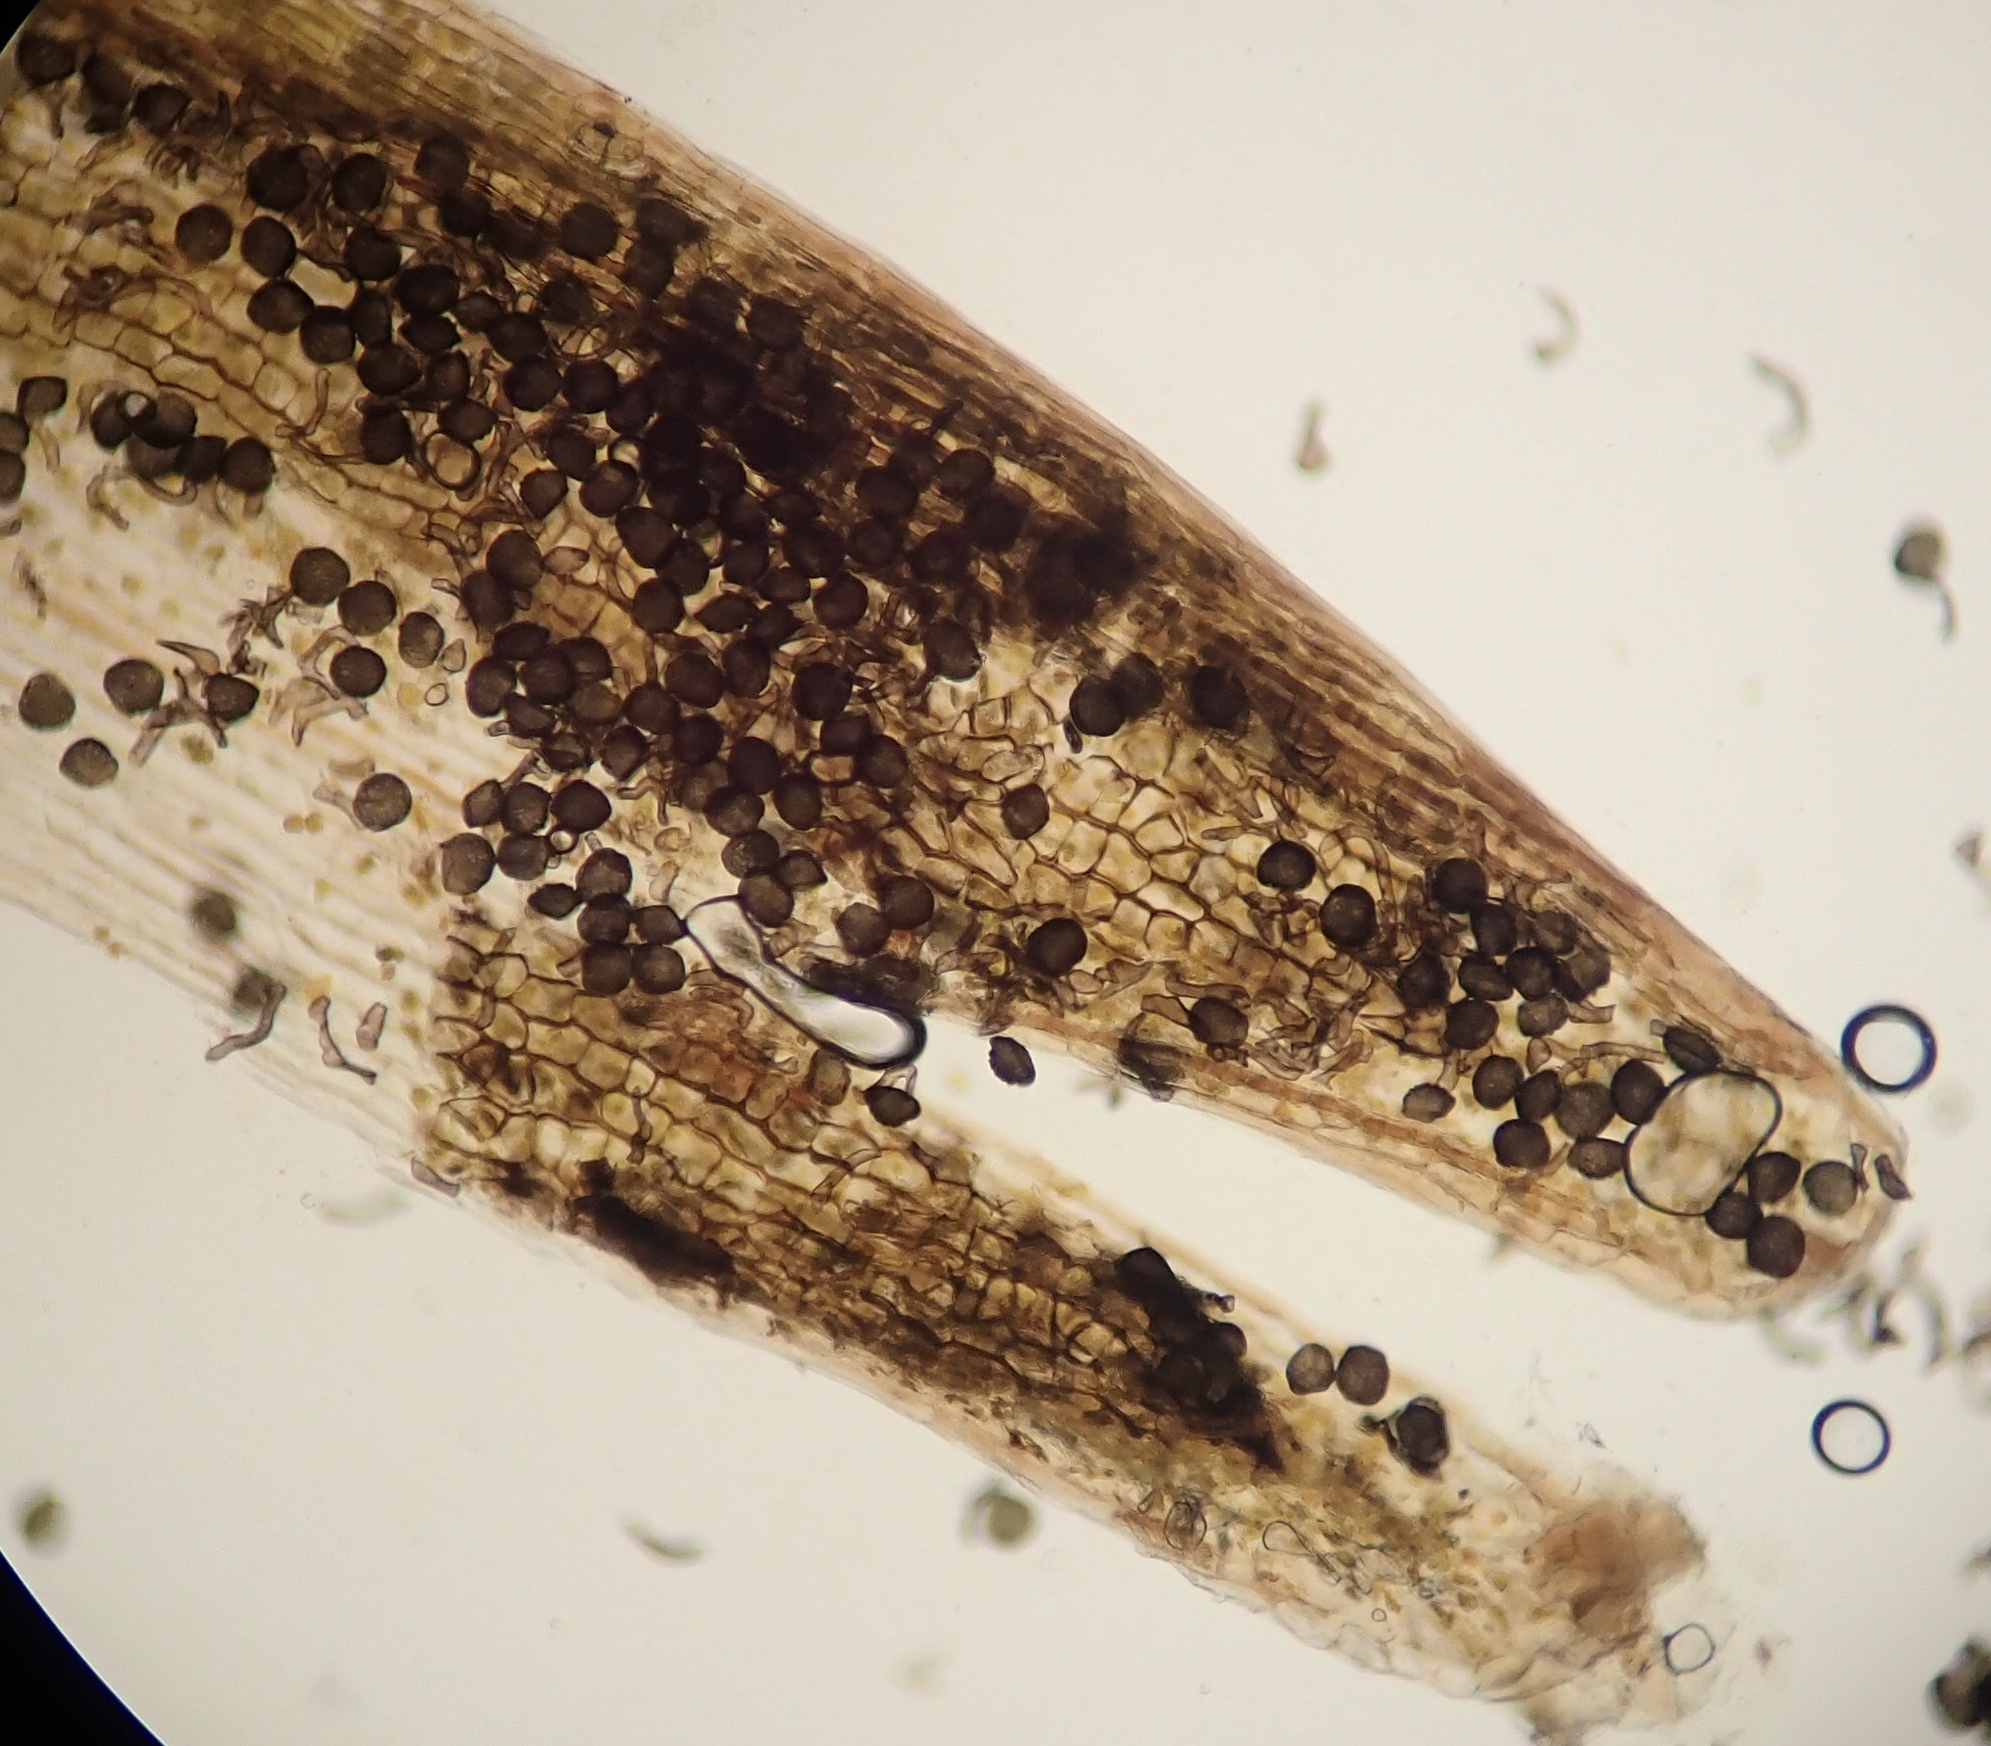 Una vista a través de un microscopio de la punta de un esporófito, muchas estructuras globosas oscuras (esporas) son visibles.